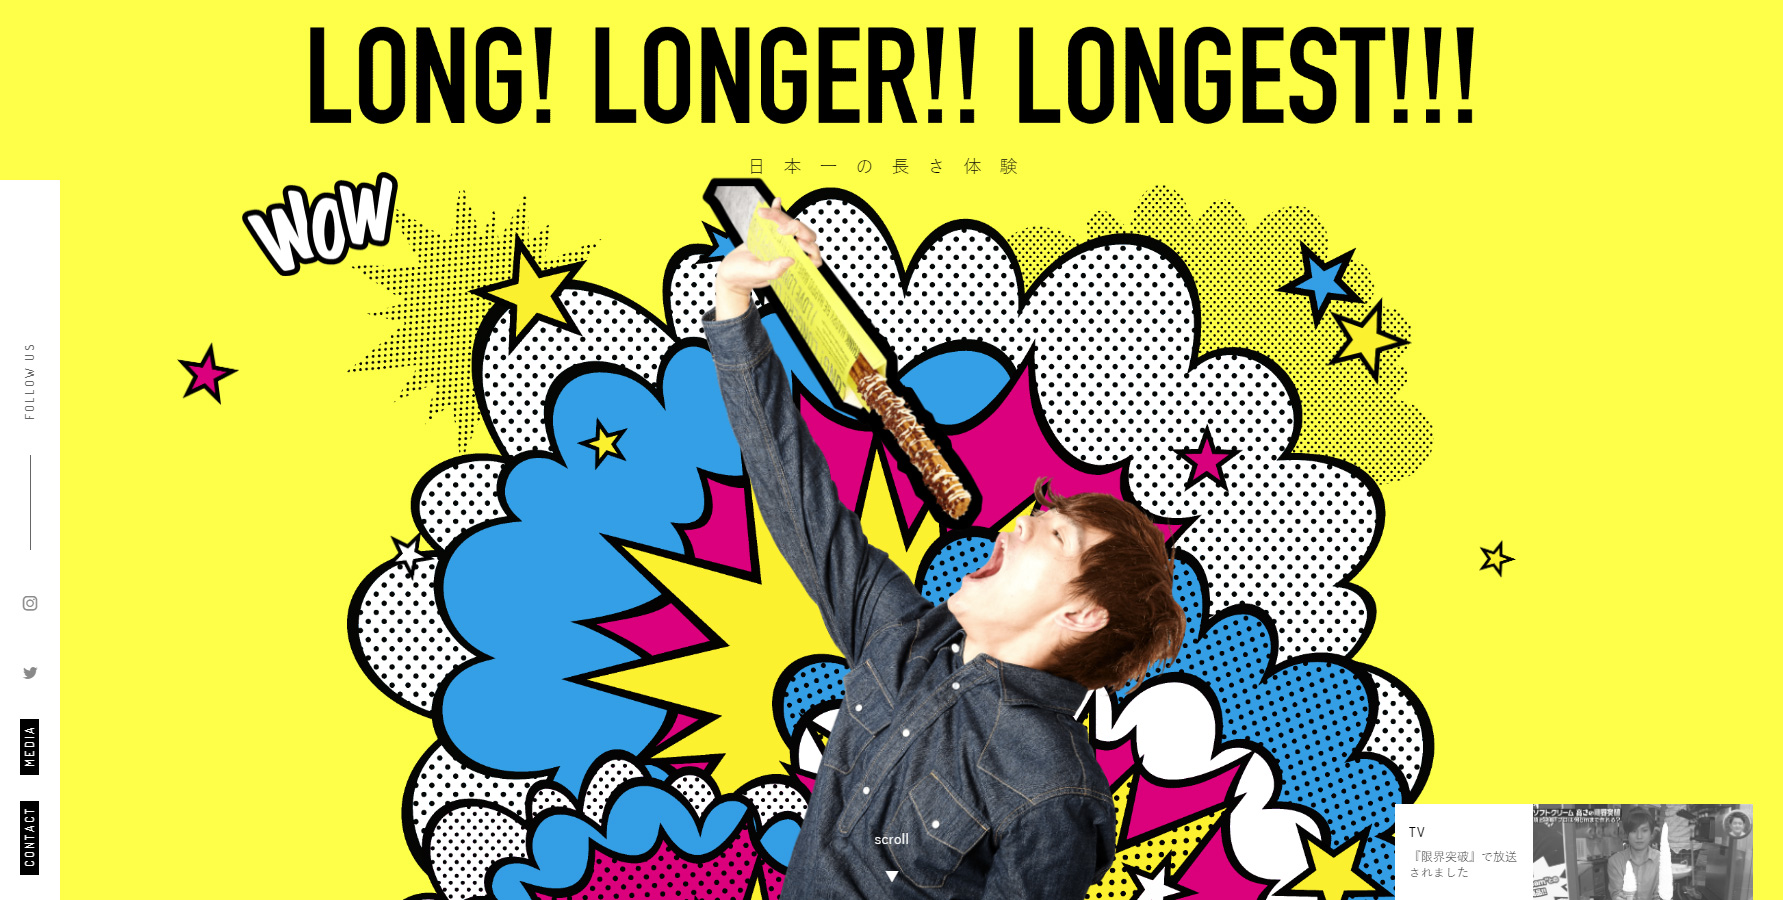 LONG! LONGER!! LONGEST!!! - Website of the Day